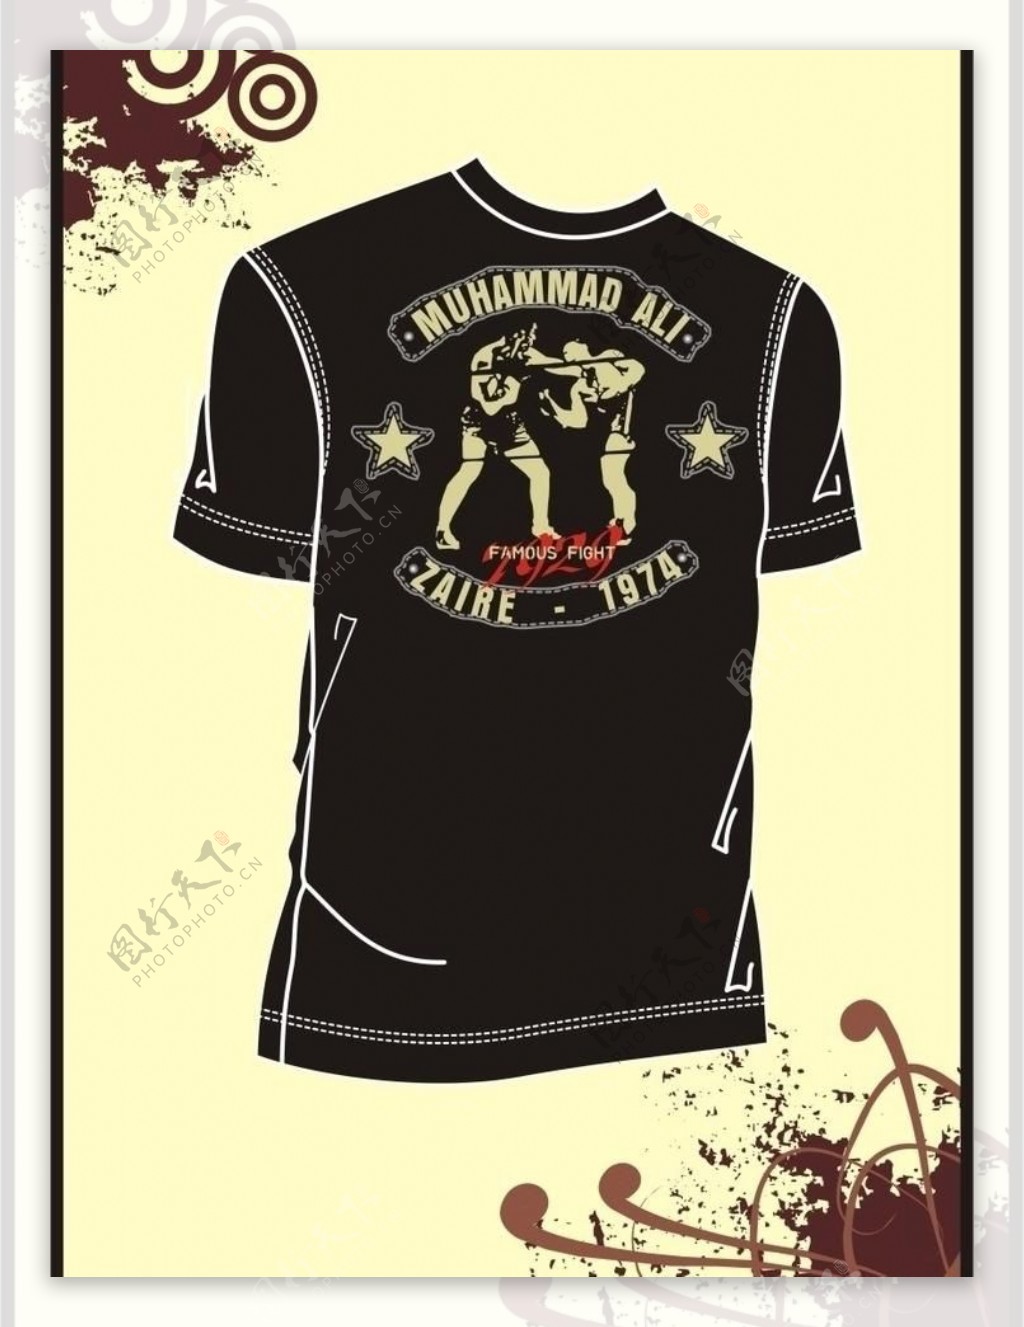 男装tshirt印花设计拳击运动比赛图片